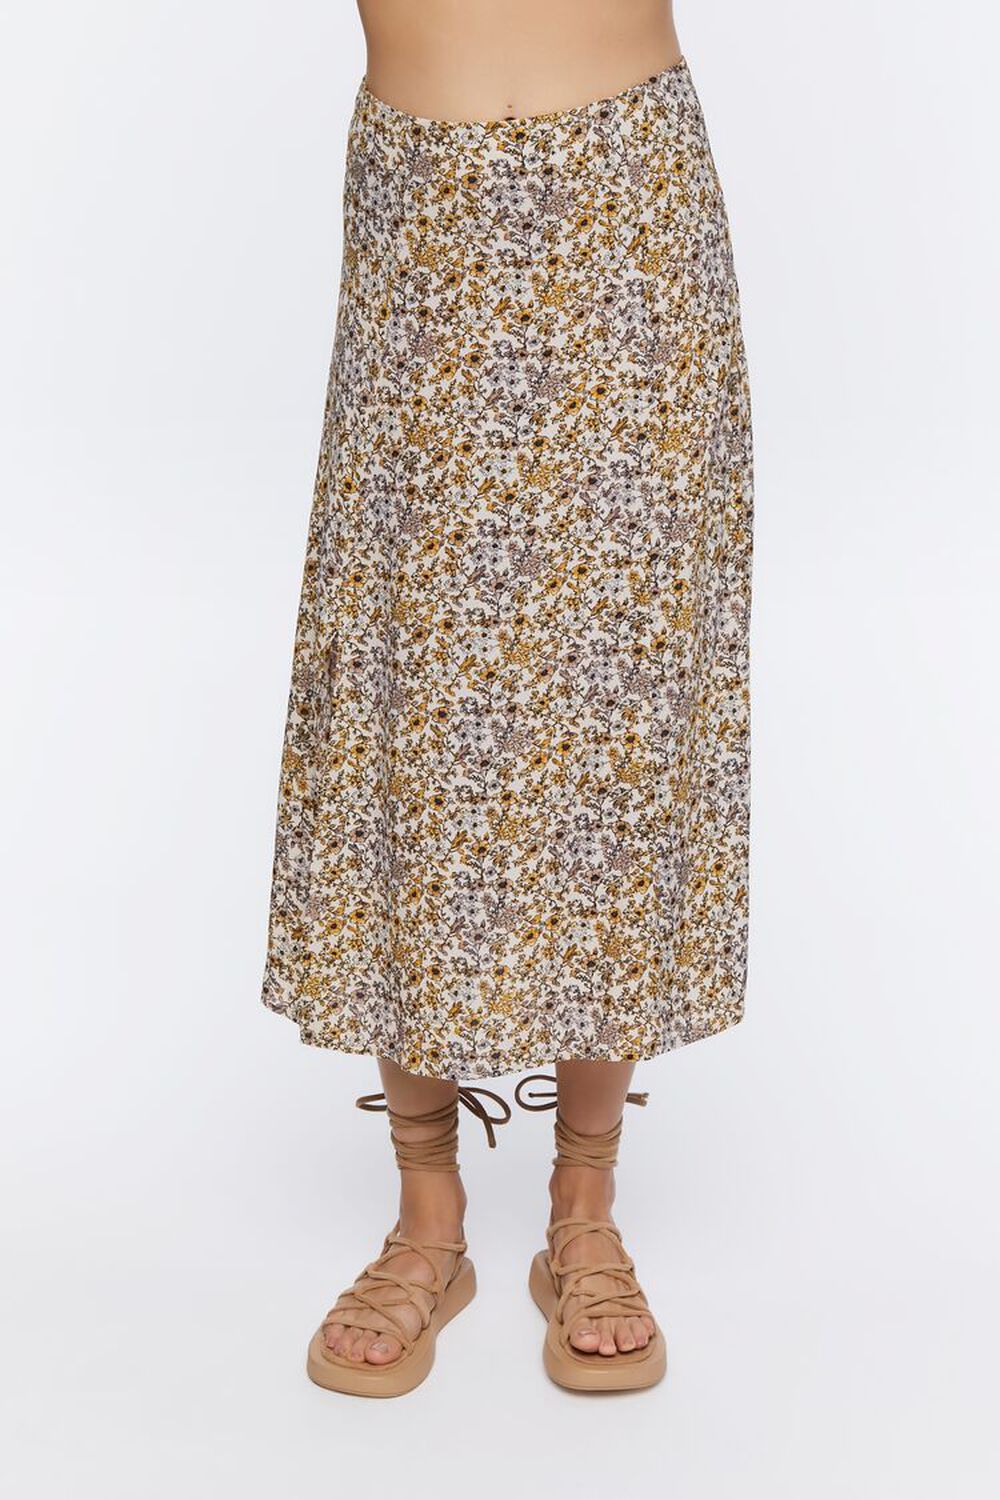 TAUPE/MULTI Floral Print Midi Skirt, image 2